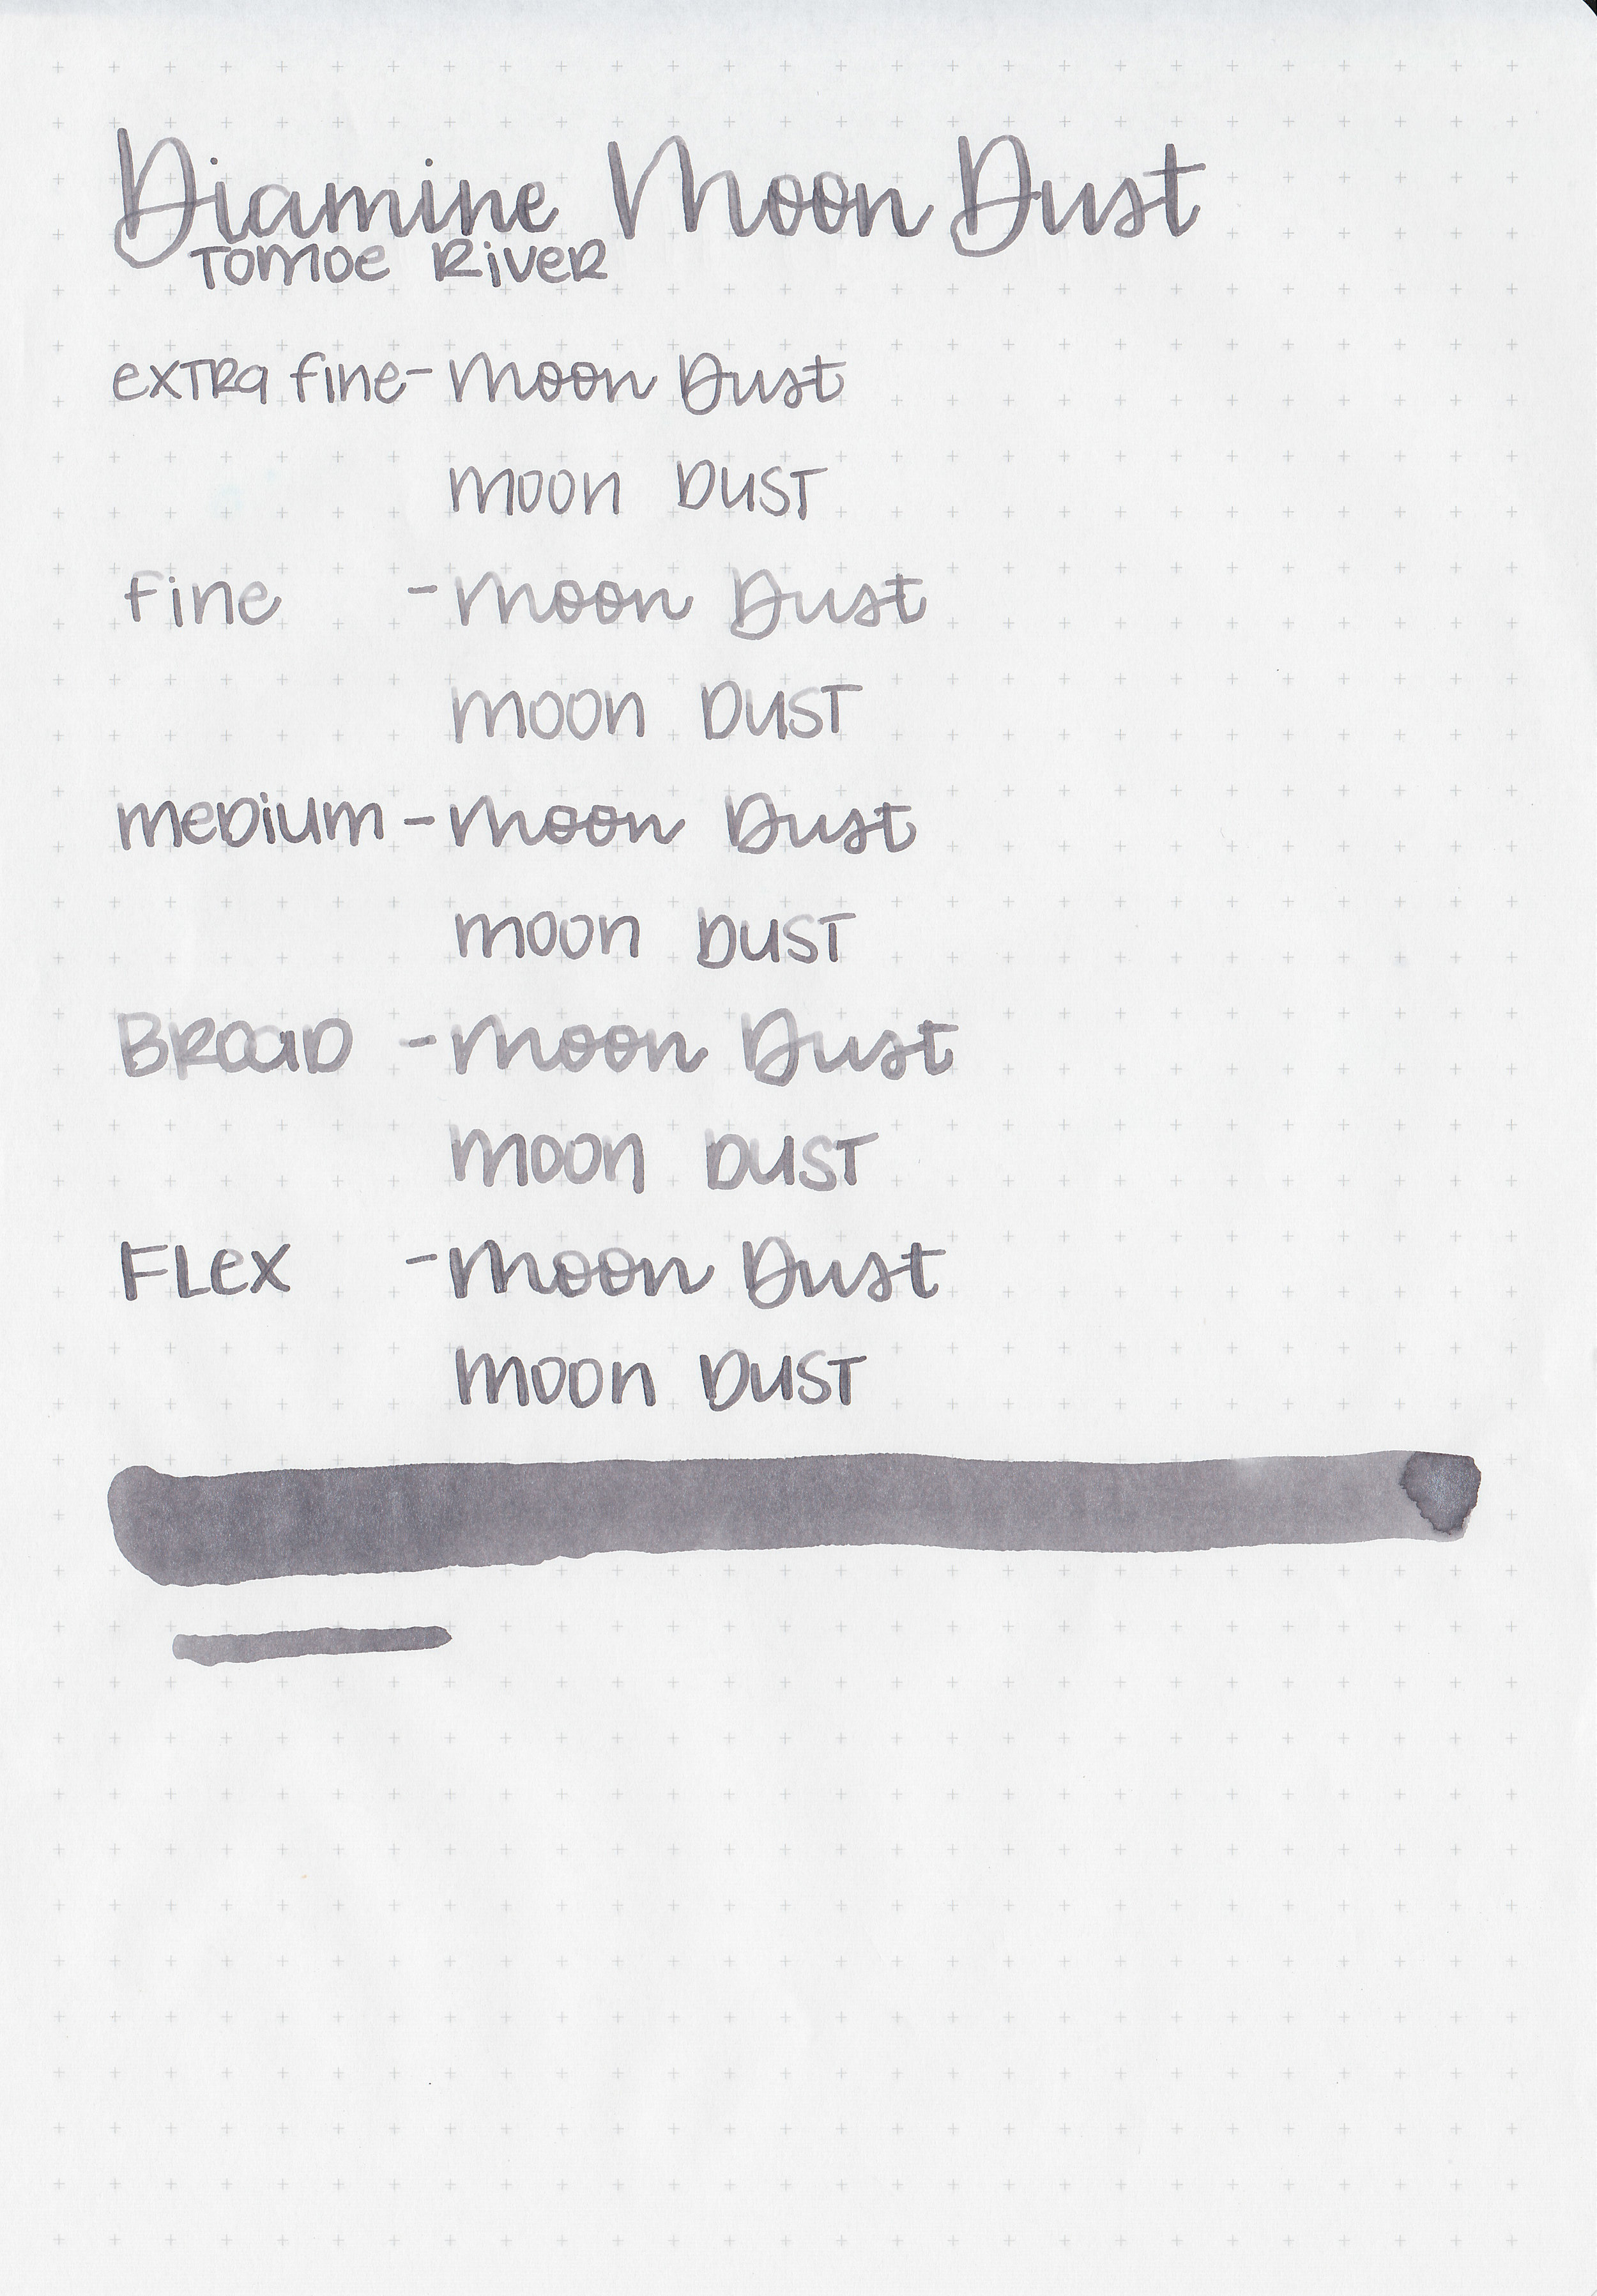 d-moon-dust-7.jpg